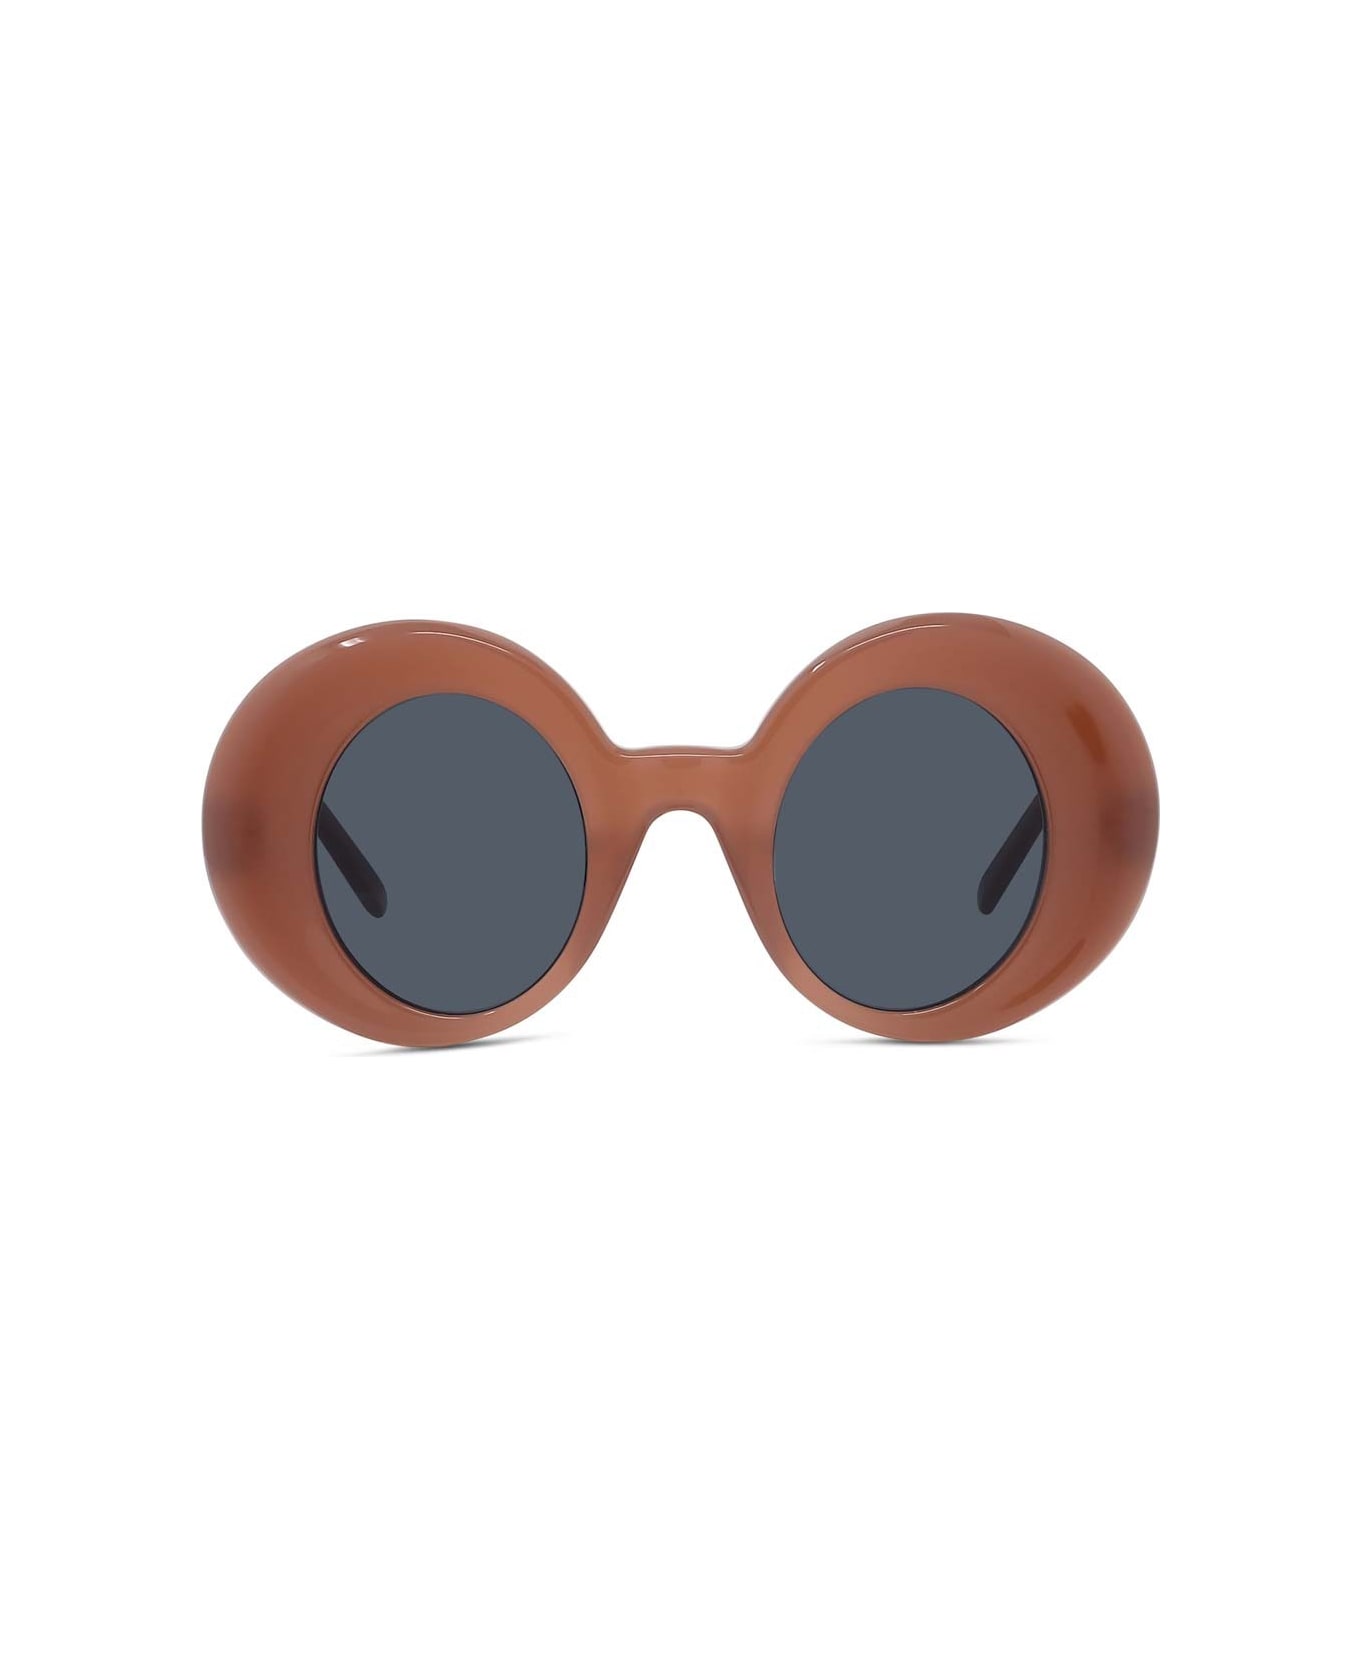 Loewe Sunglasses - Rosso/Grigio